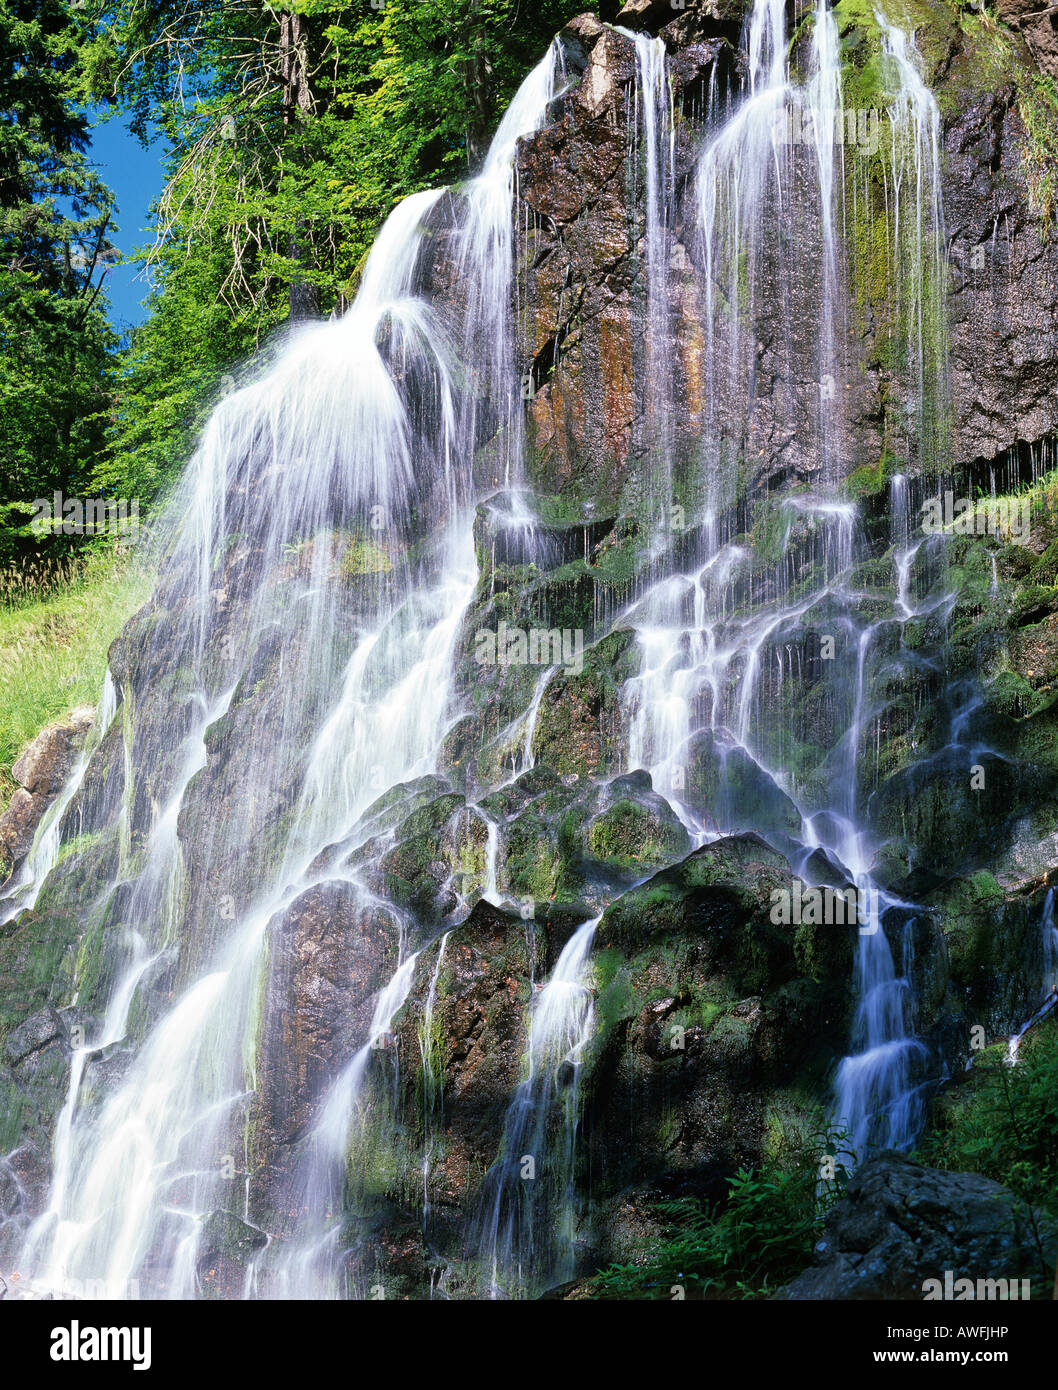 Chute dans un ruisseau de montagne avec des rochers couverts de mousse en cascade. Banque D'Images